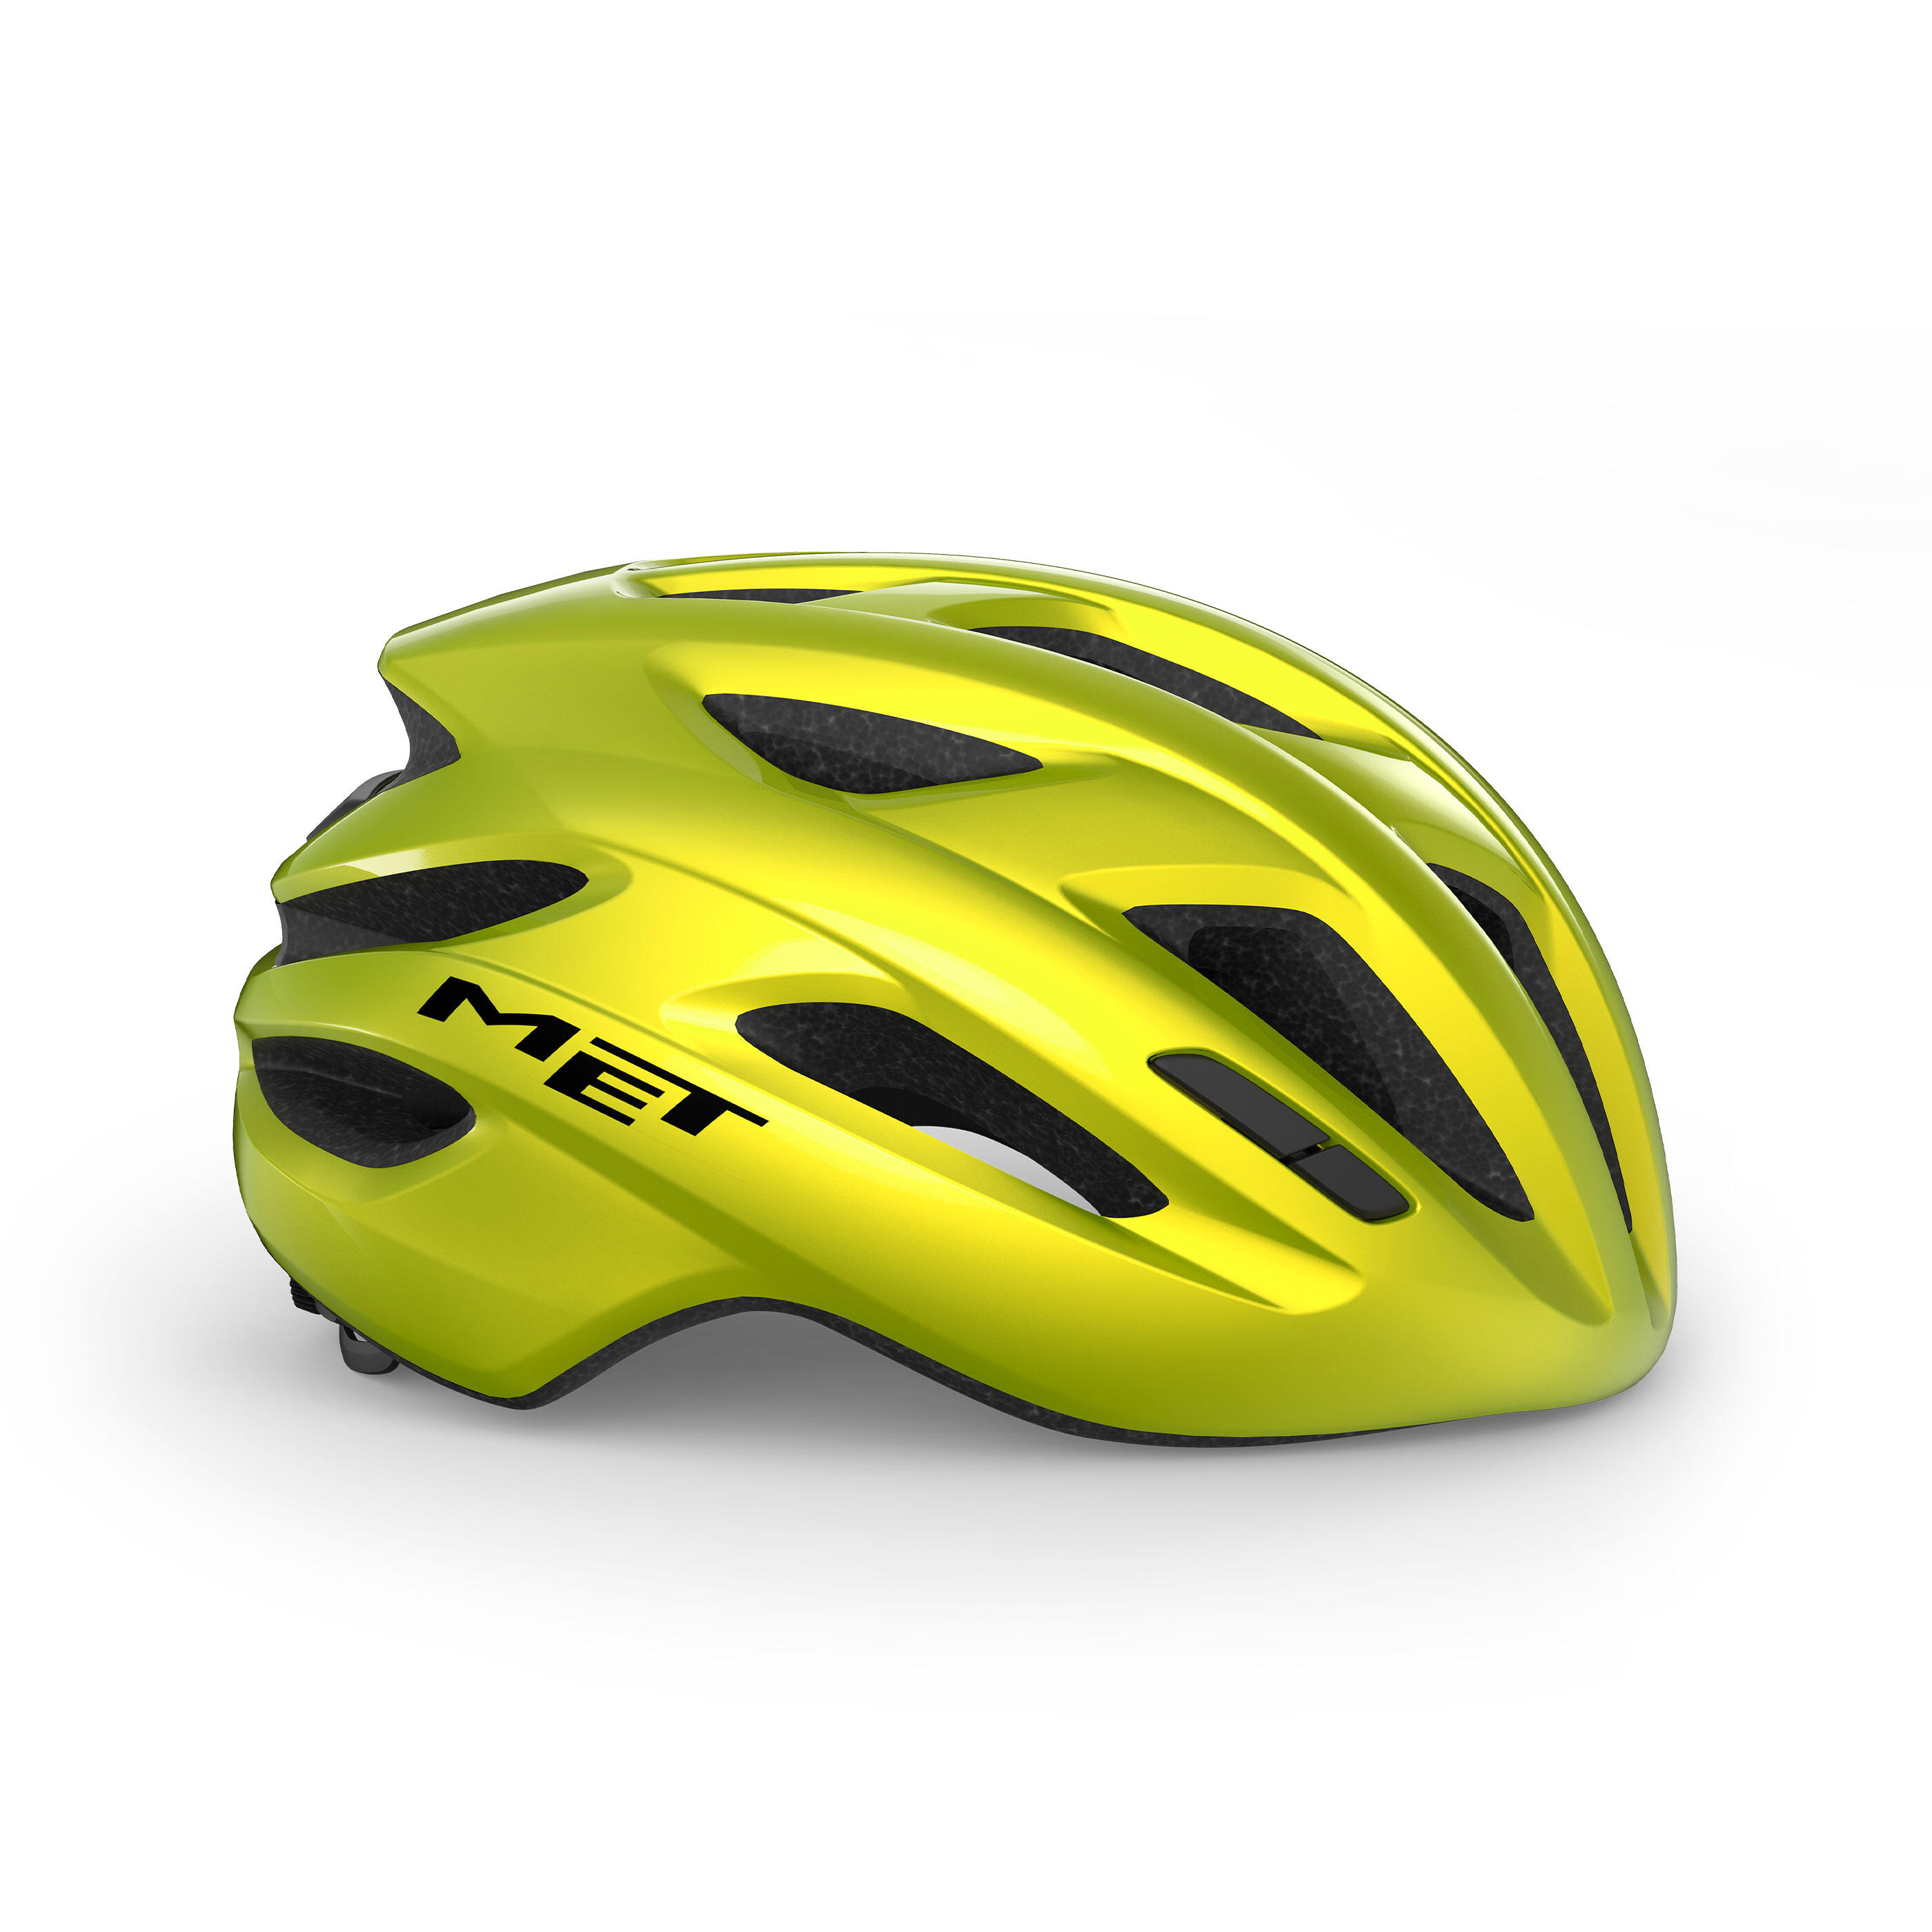 MET IDOLO MIPS Lime Yellow Metallic XL Road Bike Helmet 3/6